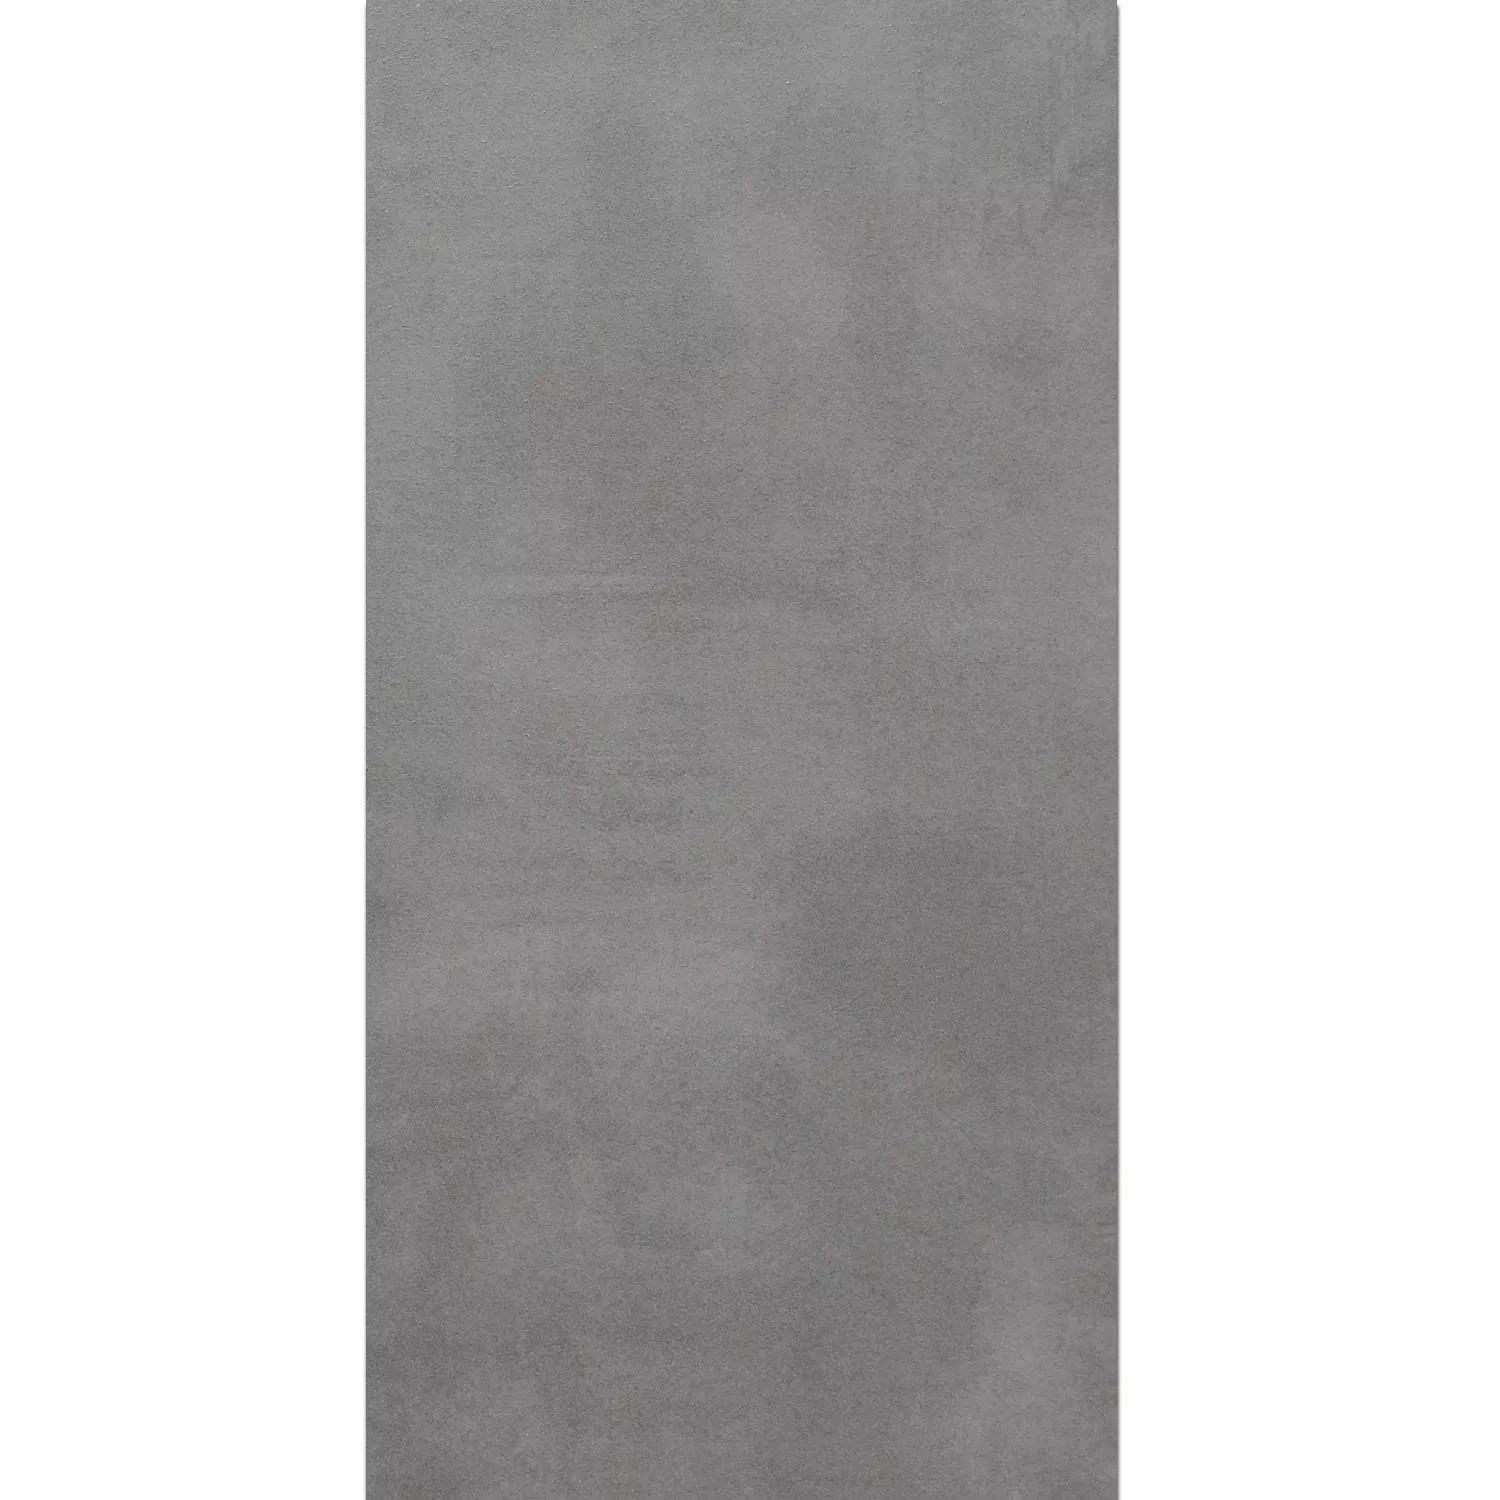 Tерасовидни Плочи Zeus Бетонен Вид Grey 60x90cm